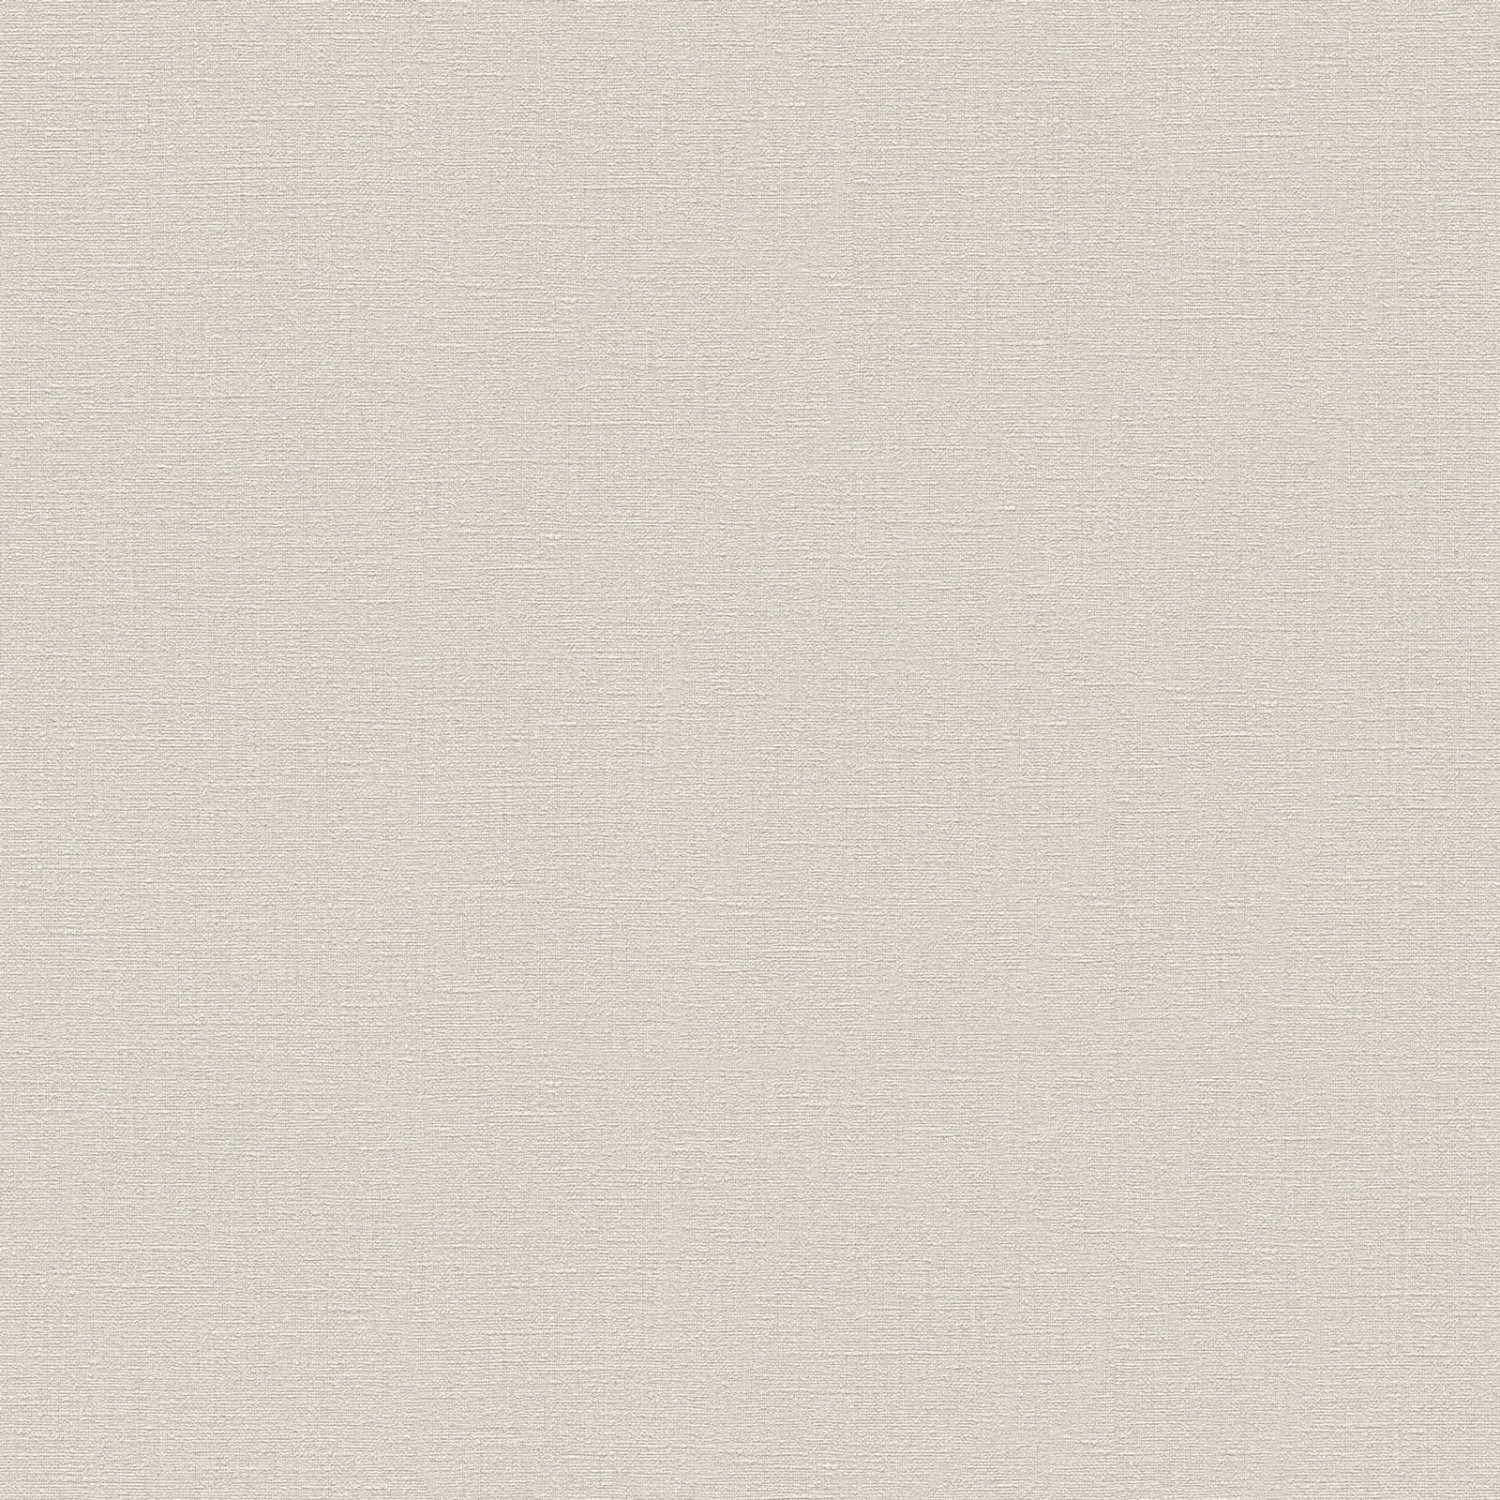 Bricoflor Uni Vliestapete Nordisch Moderne Tapete Einfarbig in Beige Grau für Wohn und Arbeitszimmer Büro Wandtapete mit Vinyl Dezent im Scandi Style von Bricoflor